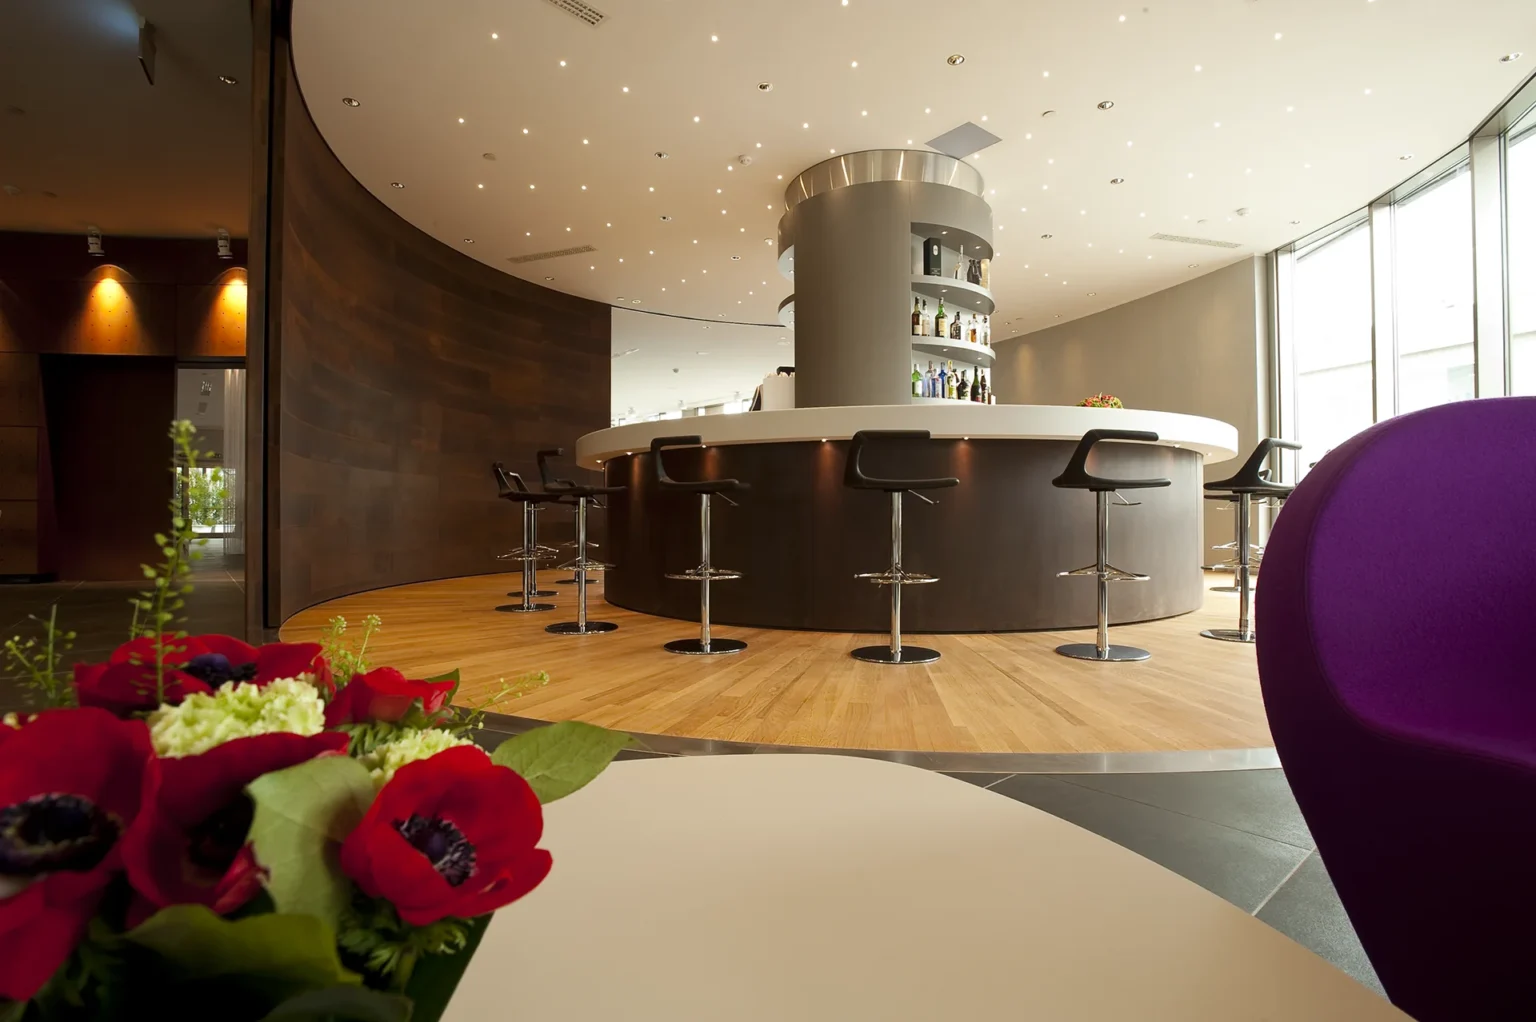 Nell'immagine, il Lounge Bar del The Hub Hotel 4 stelle a Milano: si vede il bancone del bar con degli sgabelli. Dietro il bancone, dei ripiani con delle bottiglie di alcolici. In primissimo piano, si intravede un vaso di fiori rossi e bianchi e, sulla destra, lo schienale di un divano viola.